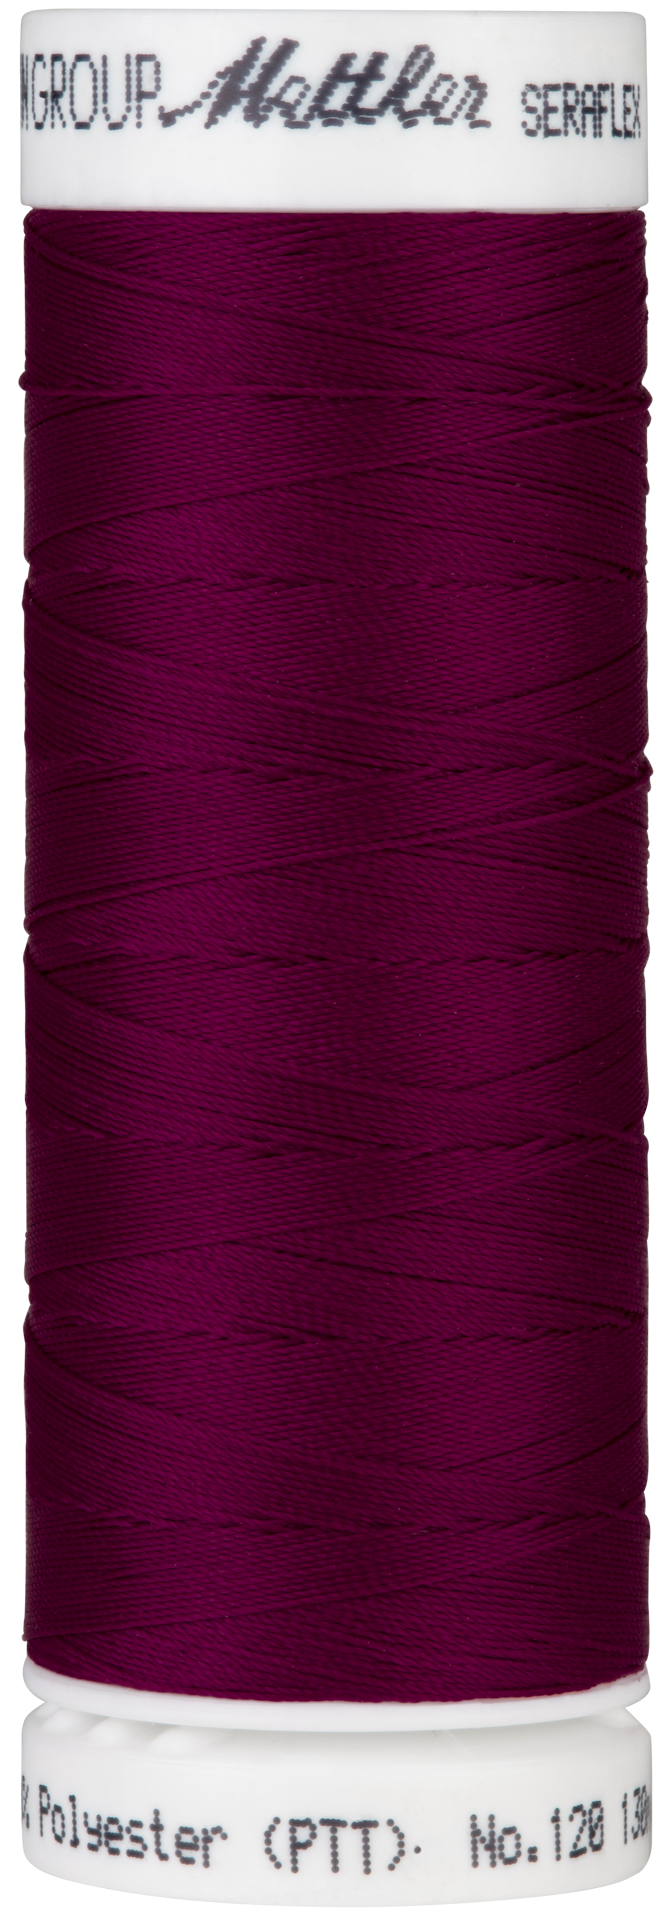 Linhas elásticas SERAFLEX 130m (Todas cores)